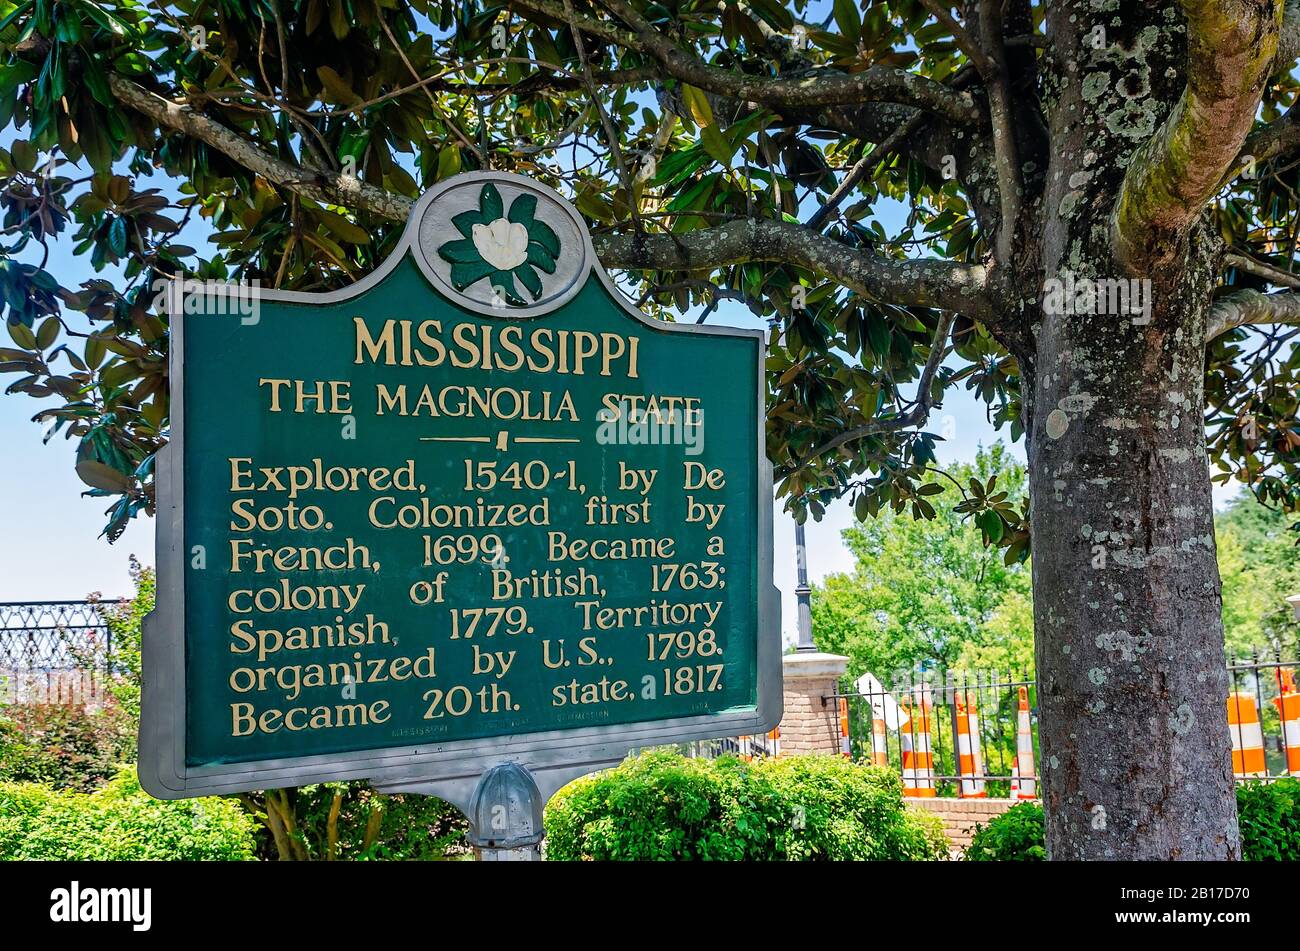 Un marqueur historique situé sous un magnolia décrit l'histoire du Mississippi, l'État du Magnolia, au Centre d'accueil de Vicksburg, au Mississippi. Banque D'Images